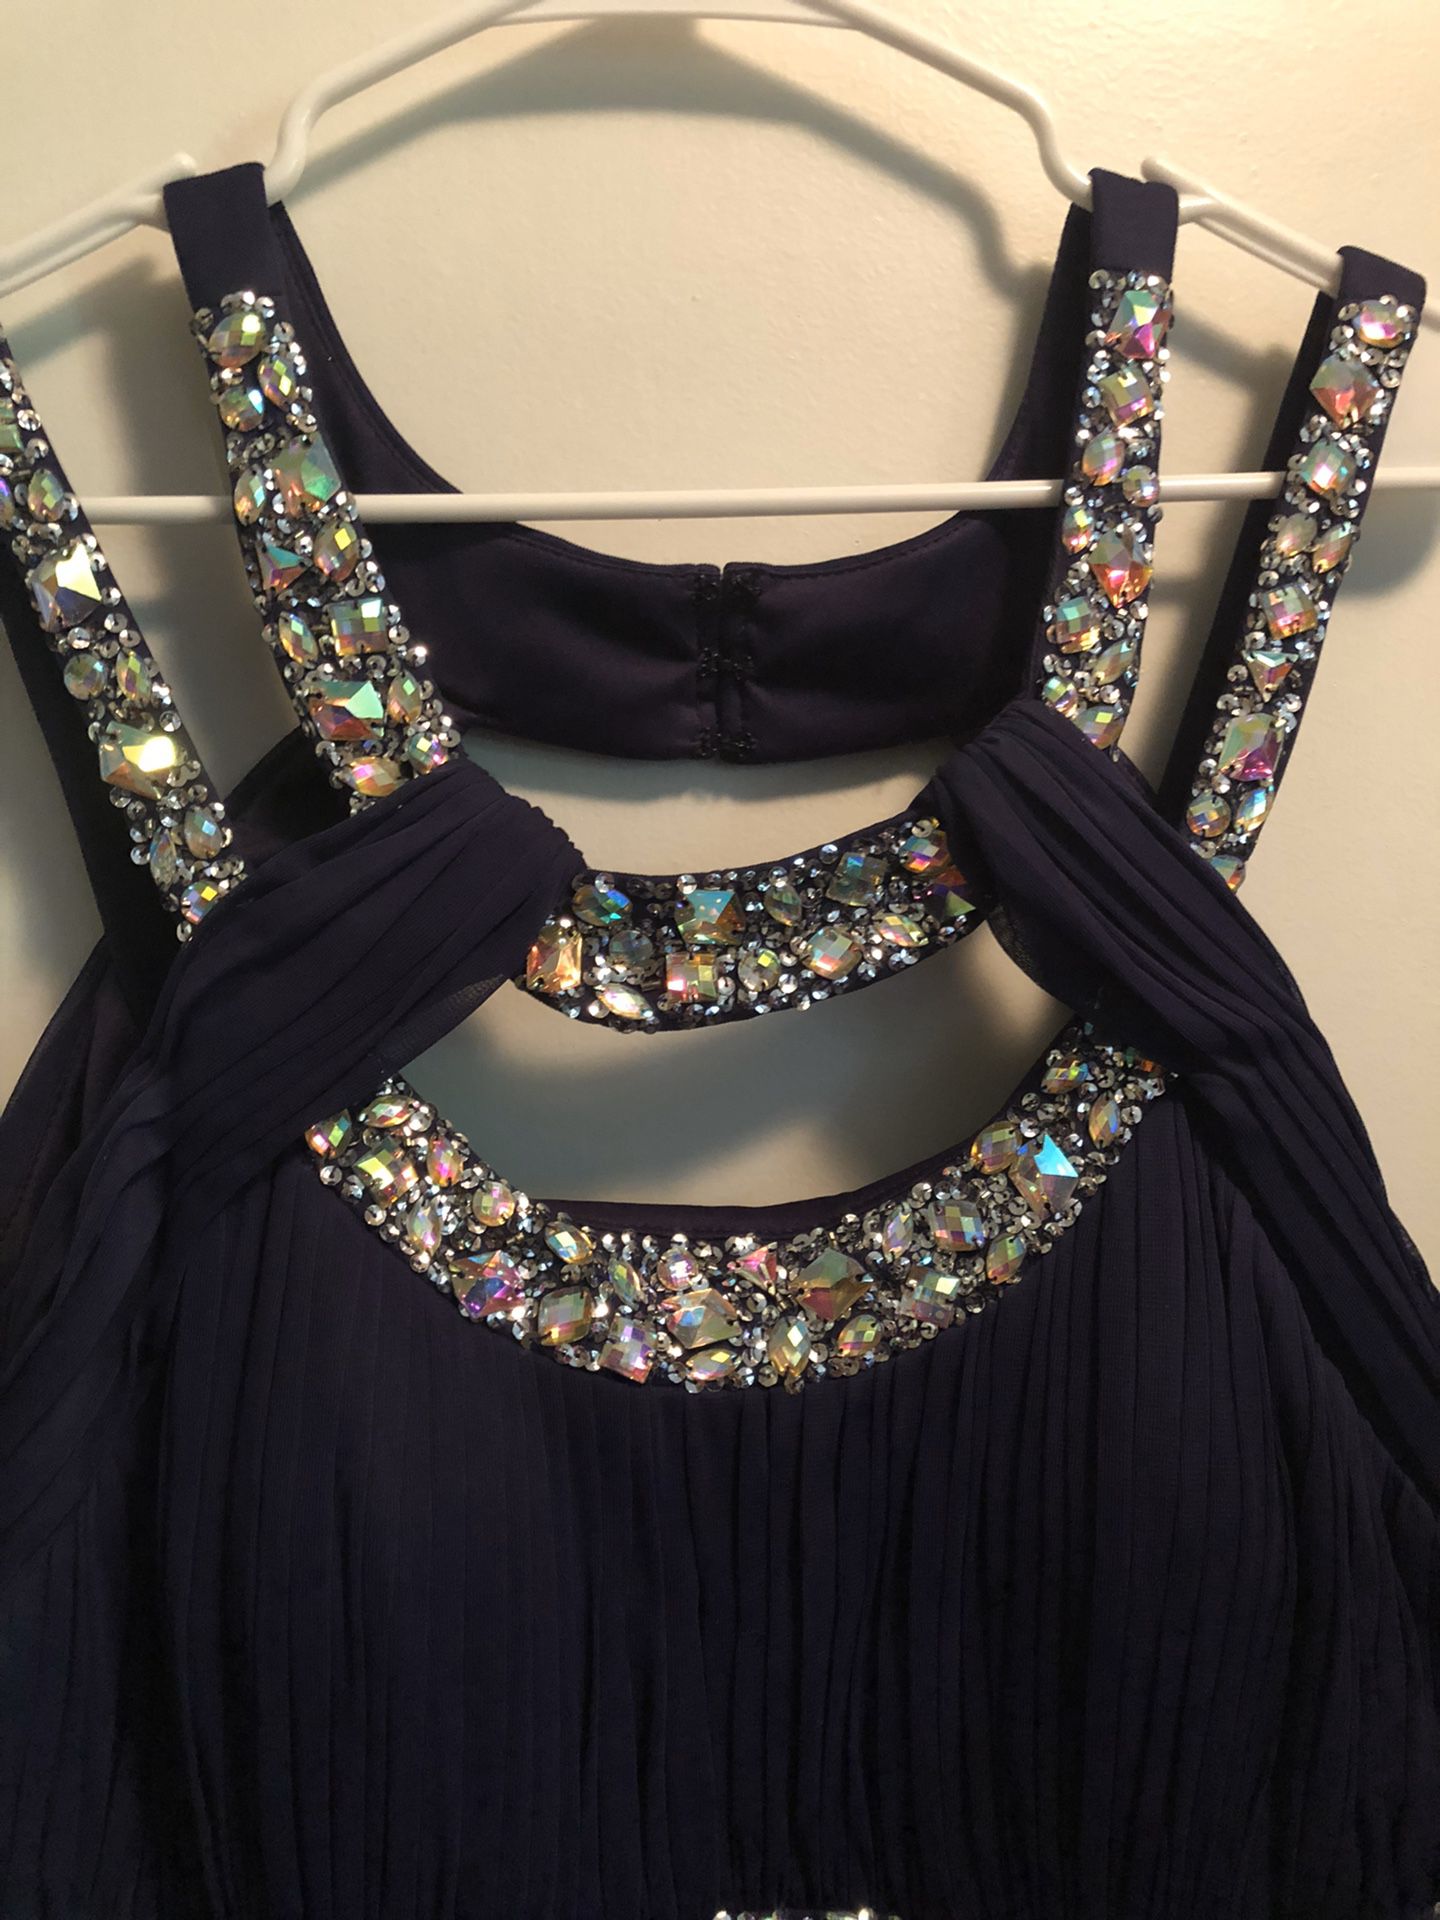 Elegant Formal Purple Dress - Very Fancy - size 16